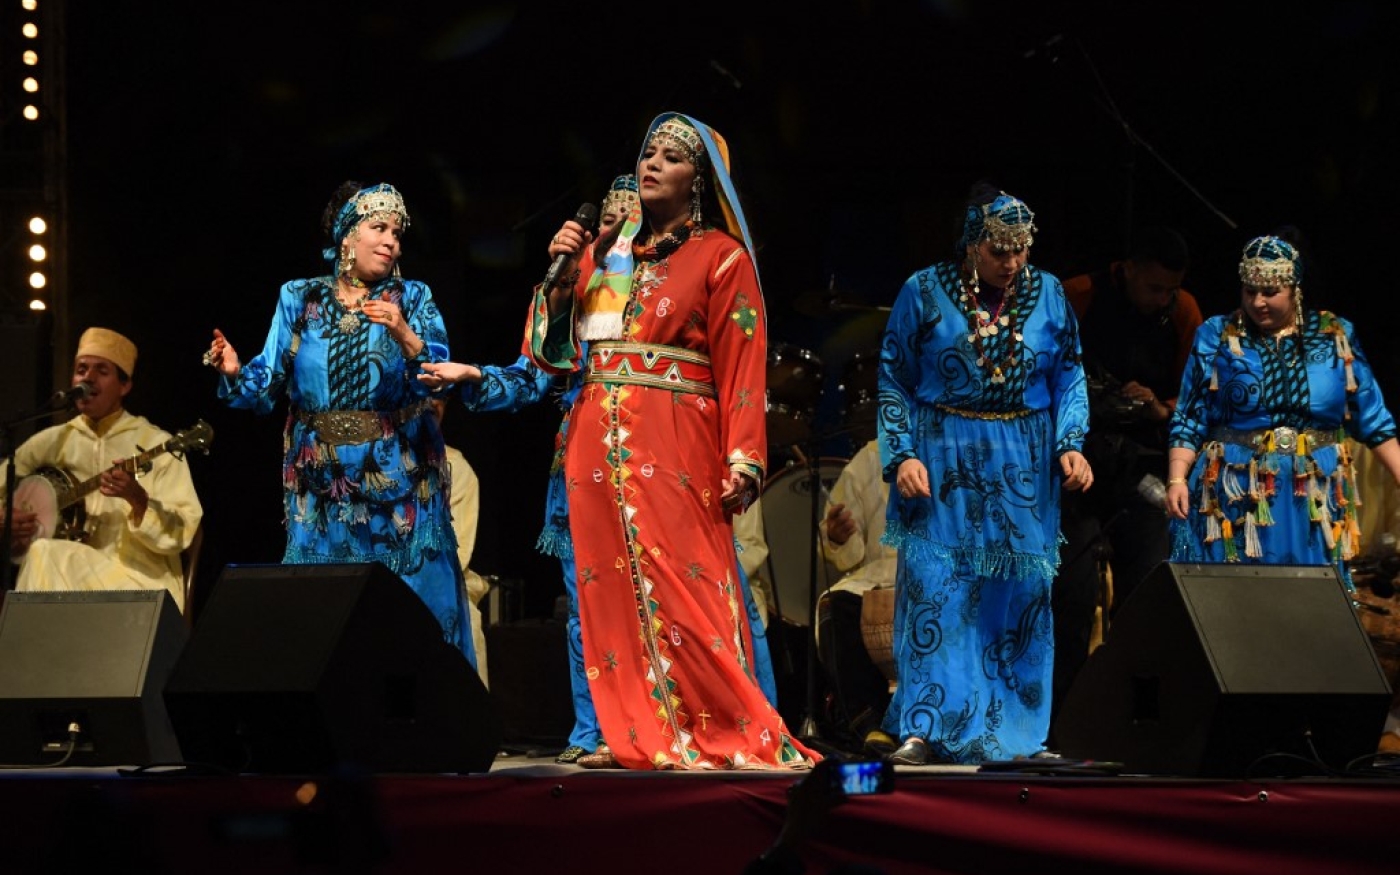 Fatima Tabaamrant, chanteuse amazighe, se produit le 12 janvier 2015 à Tiznit, au Maroc, à l’occasion du festival Edition Tiwsi afin de célébrer le Nouvel An amazigh et l’entrée dans l’année 2965 du calendrier berbère (AFP)